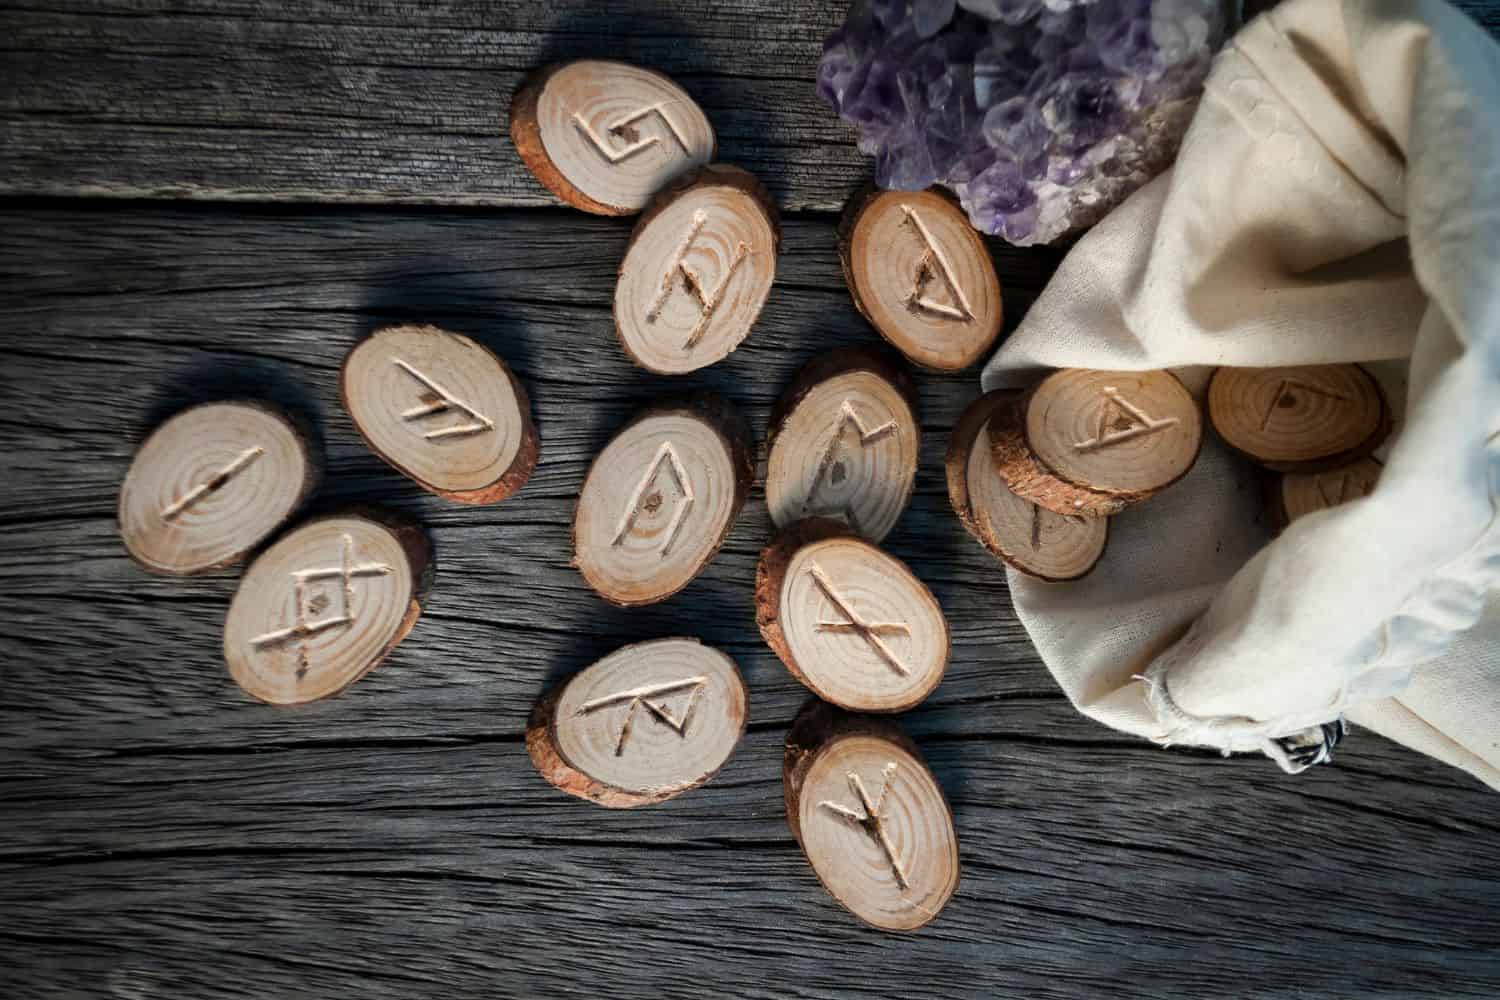 Elder Futhark Rune Meanings